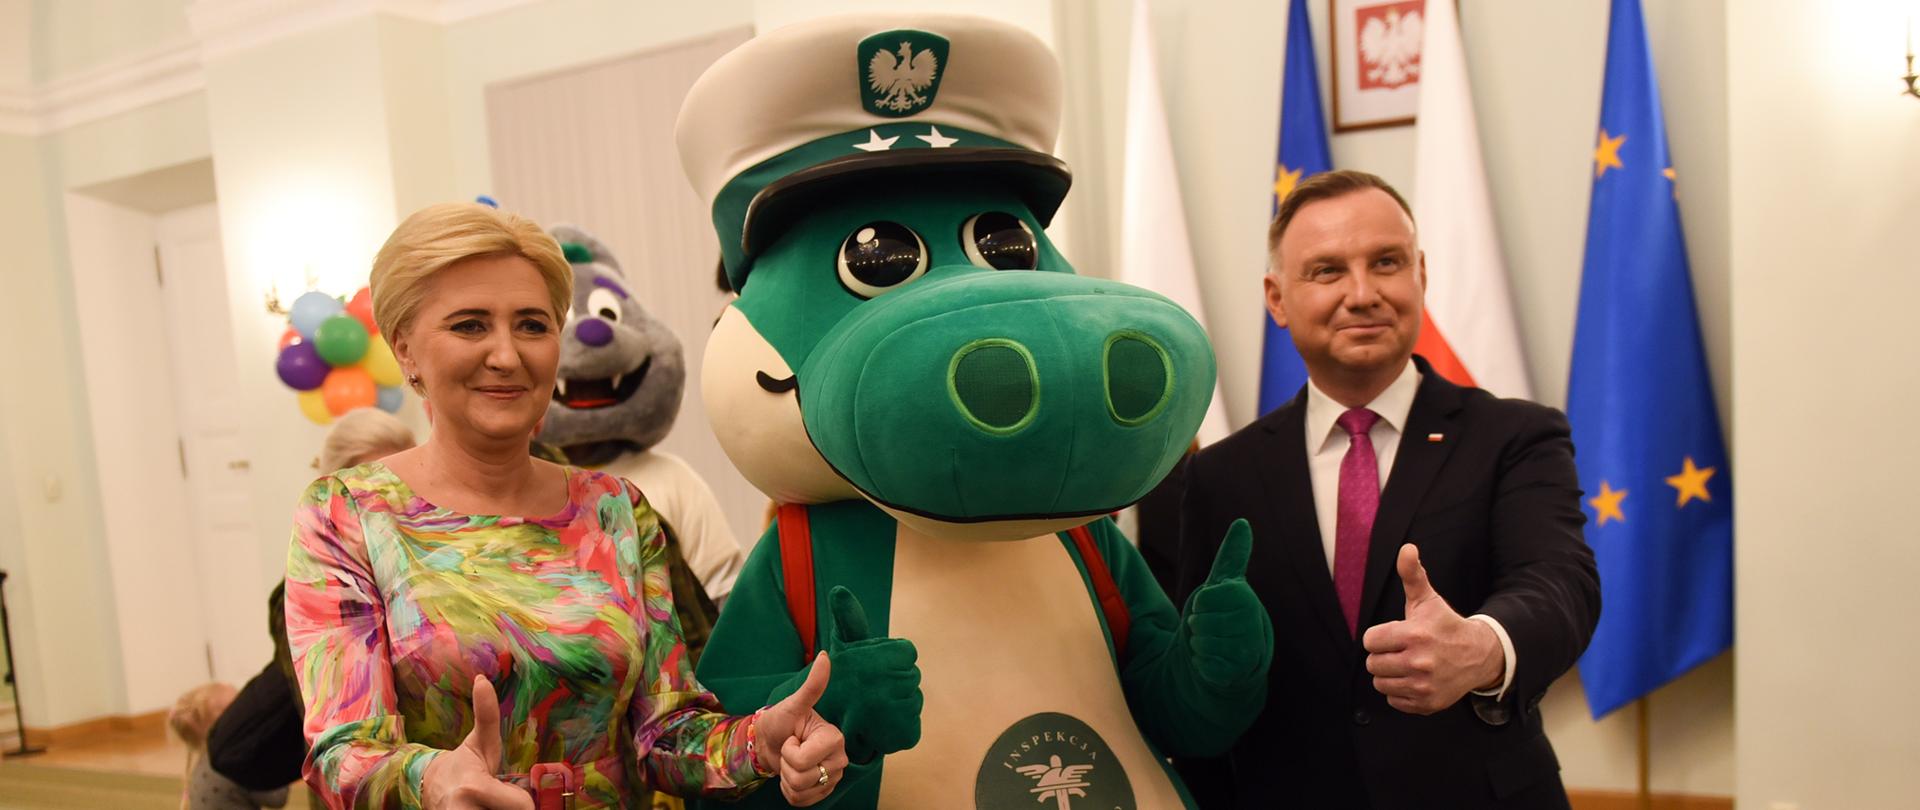 Od lewej strony stoją: Pierwsza Dama Agata Kornhauser-Duda, Krokodylek Tirek i Prezydent RP Andrzej Duda.